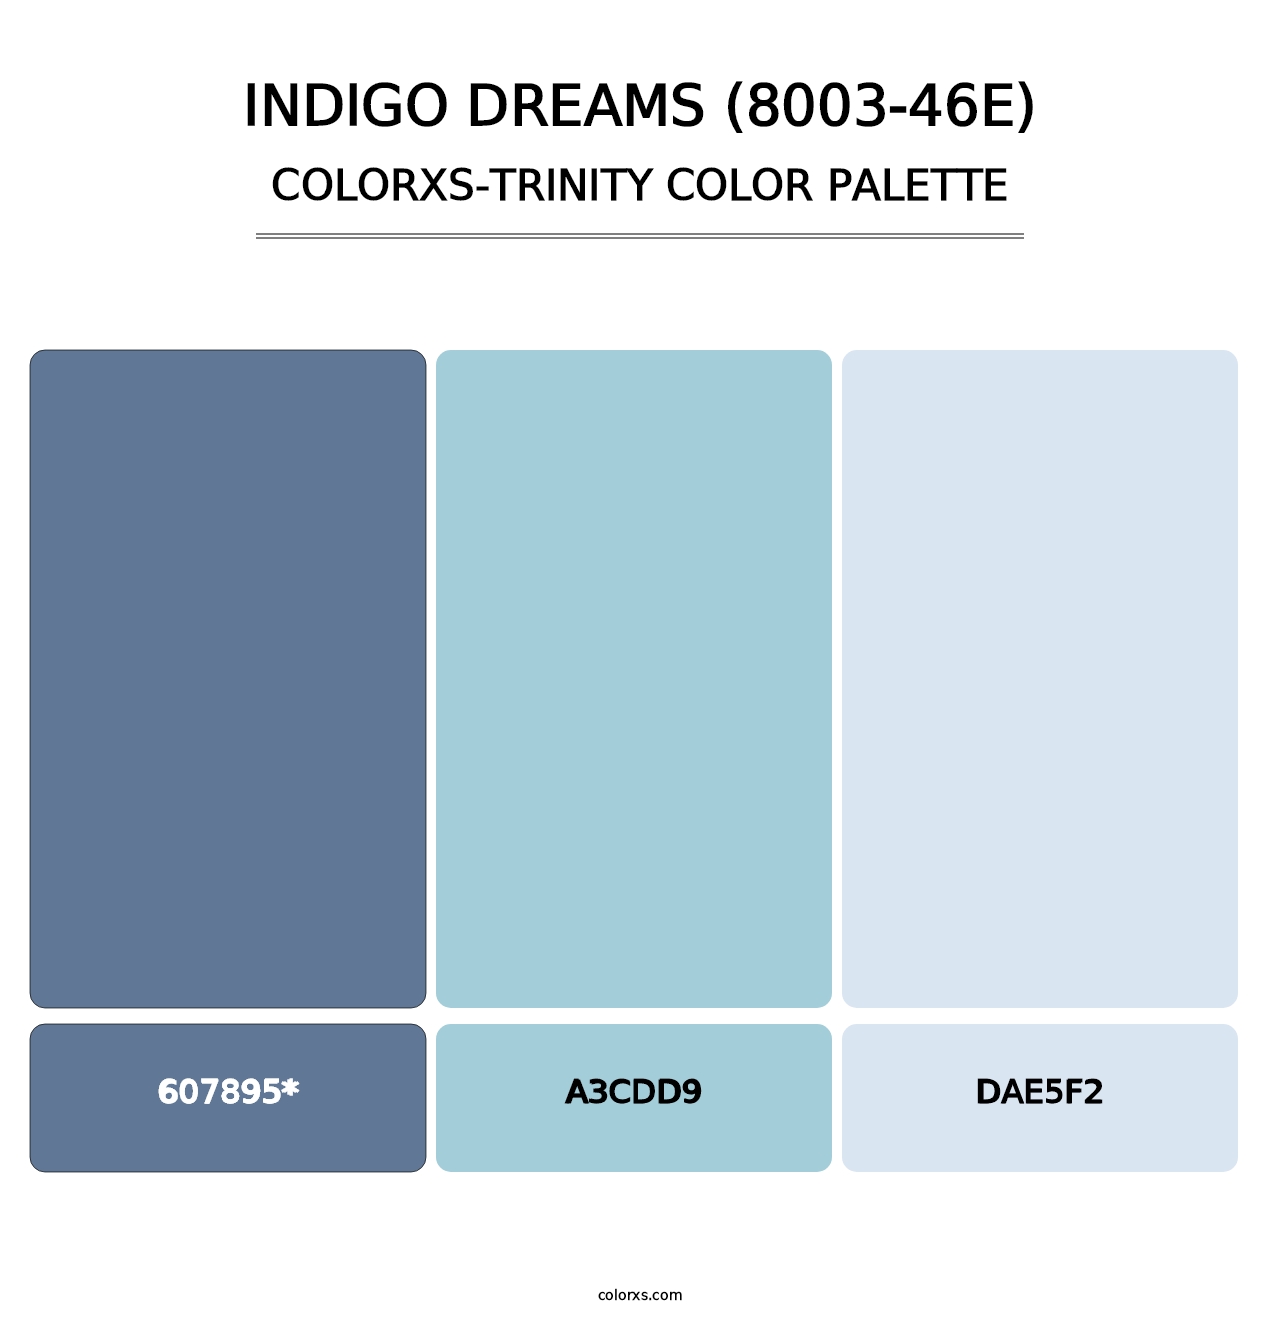 Indigo Dreams (8003-46E) - Colorxs Trinity Palette